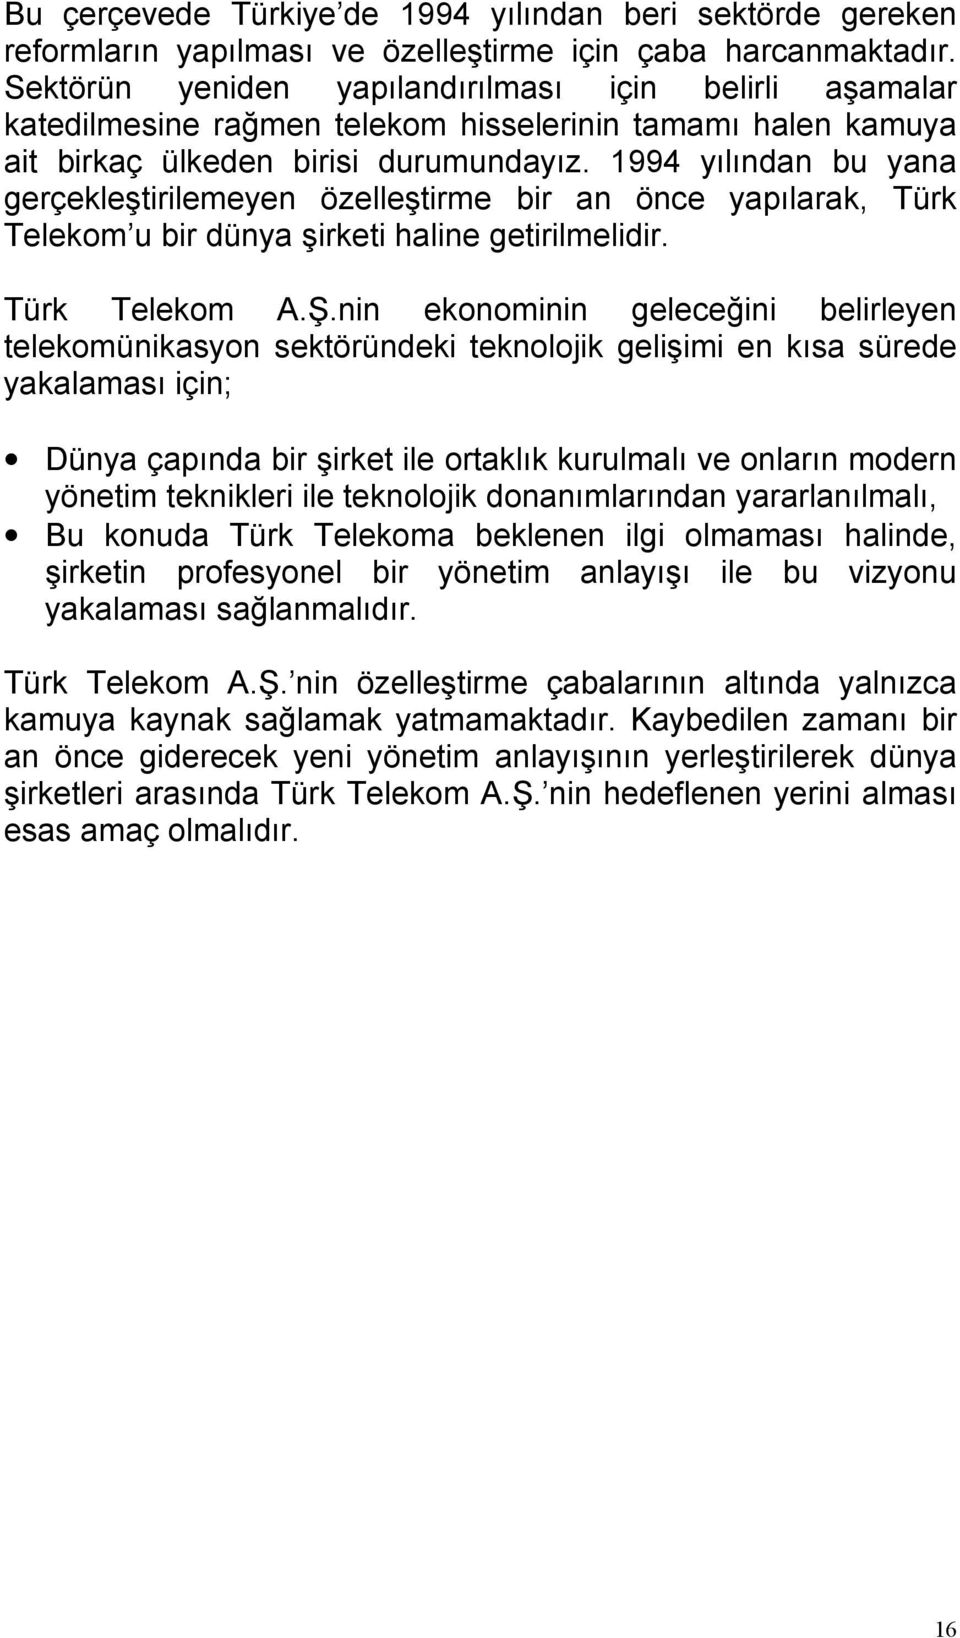 1994 yılından bu yana gerçekleştirilemeyen özelleştirme bir an önce yapılarak, Türk Telekom u bir dünya şirketi haline getirilmelidir. Türk Telekom A.Ş.